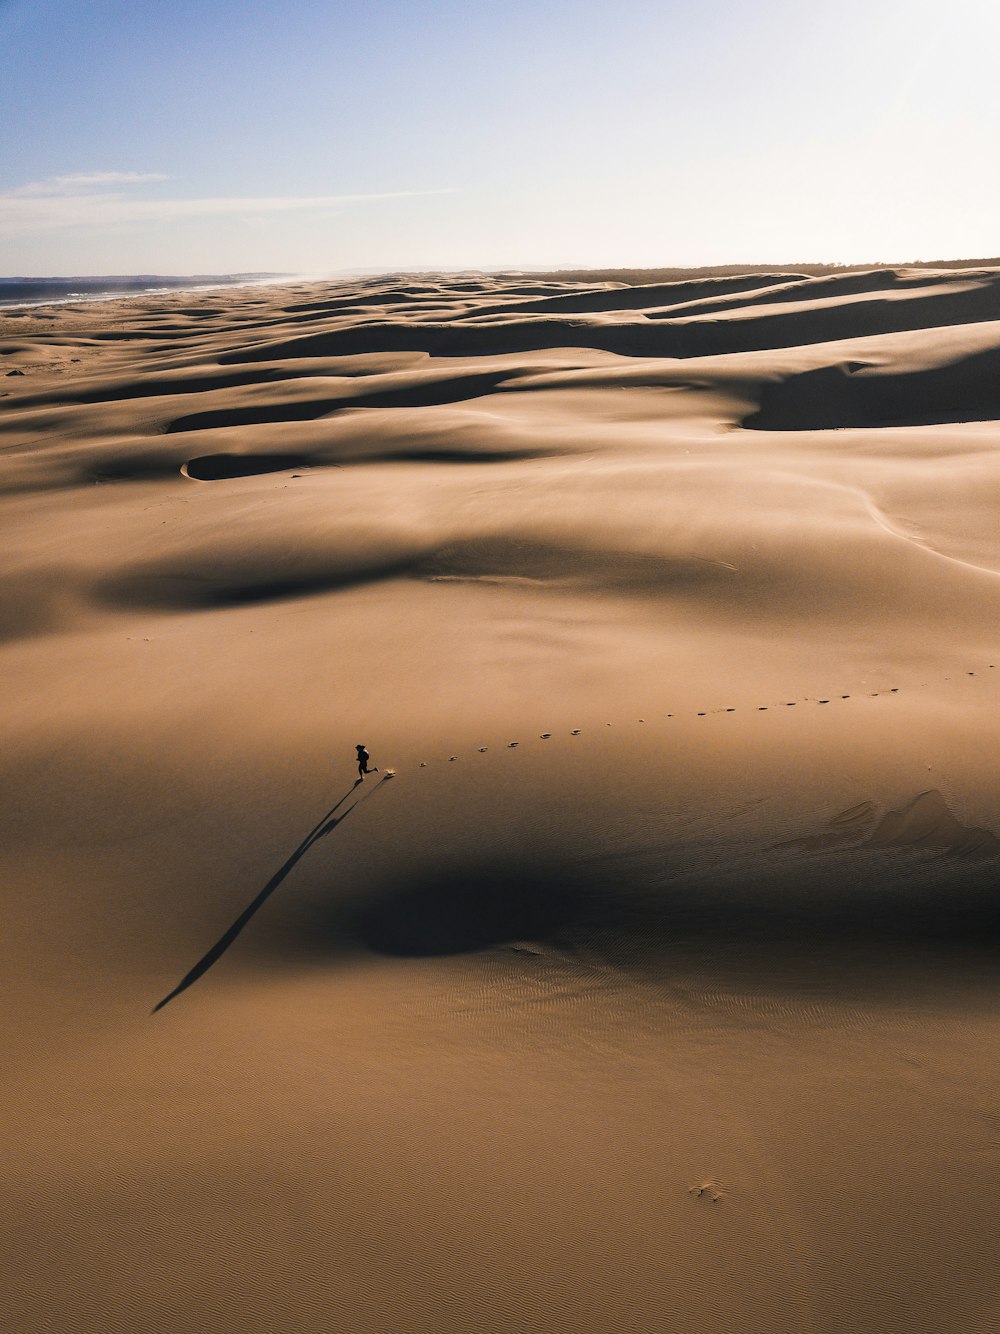 Fotografía de una persona que camina sobre el desierto